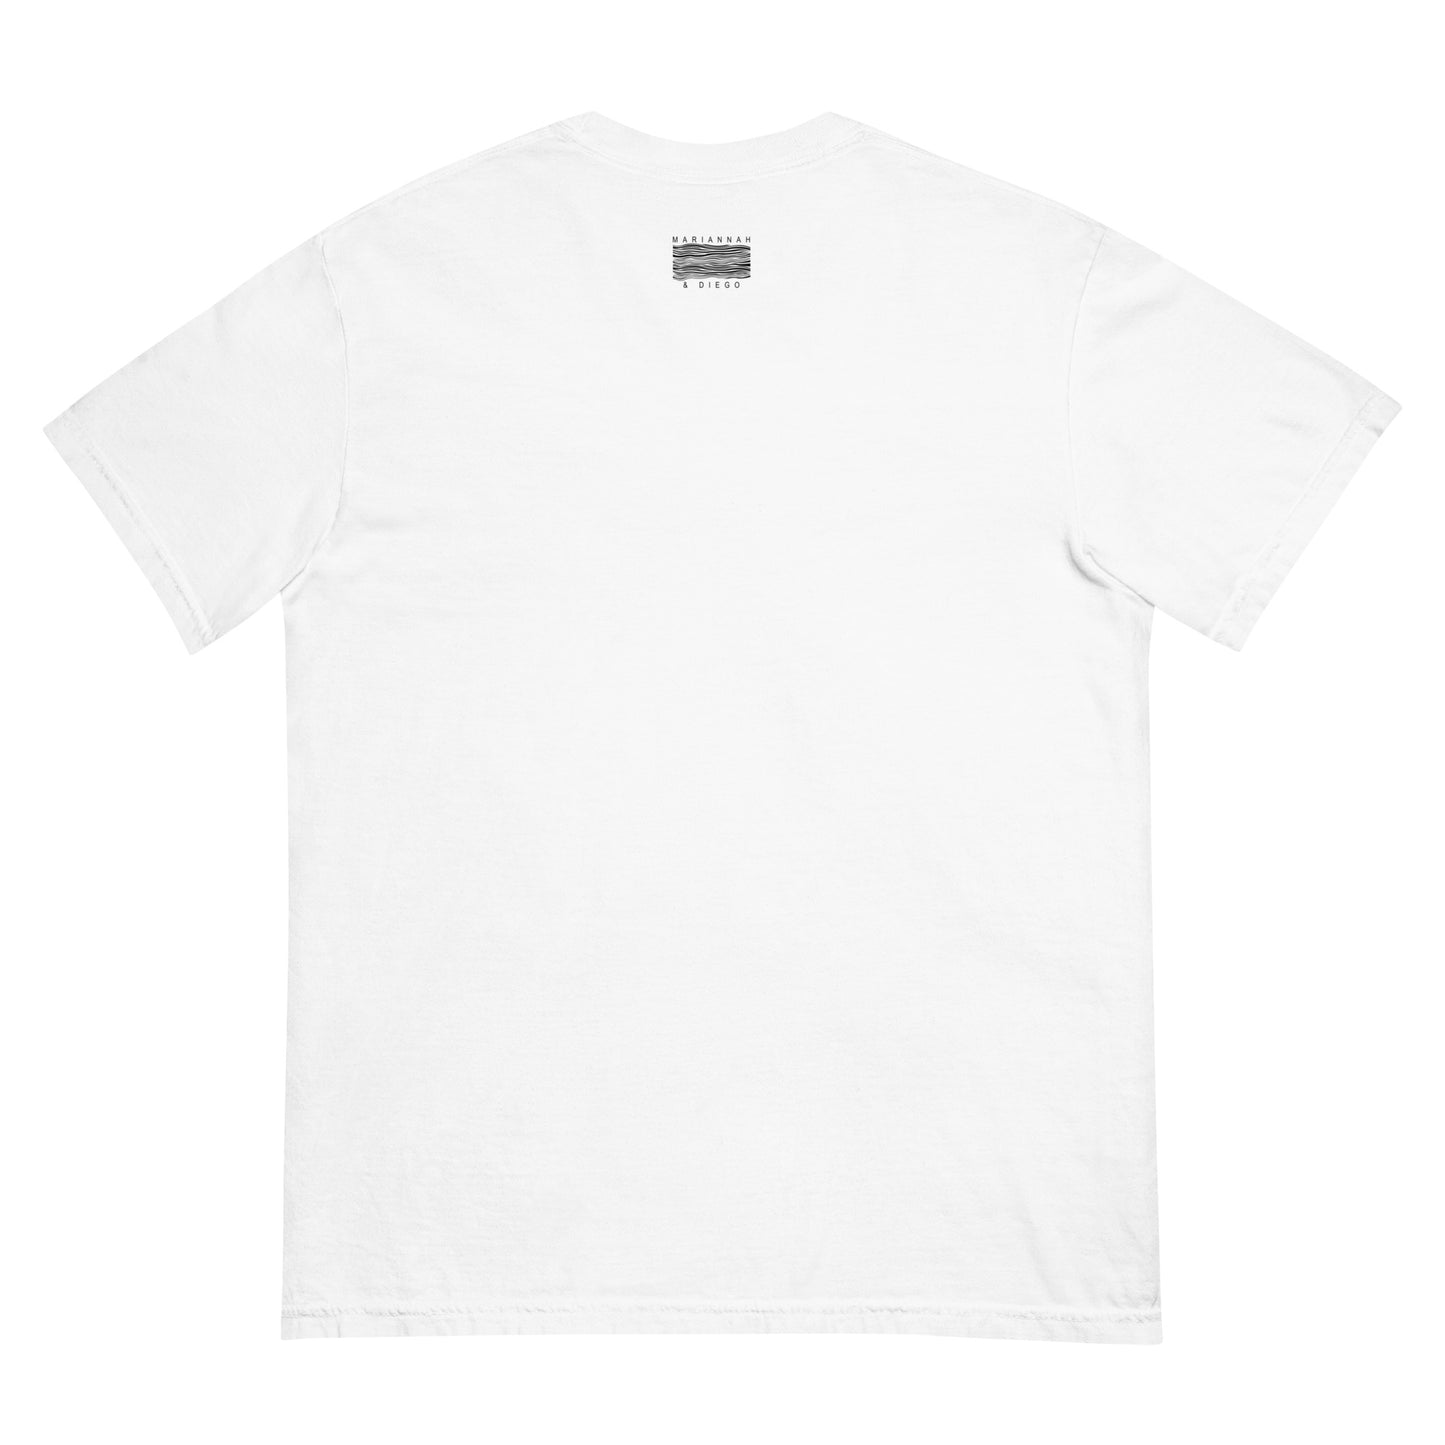 MARIANNAH Y DIEGO - White T-shirt